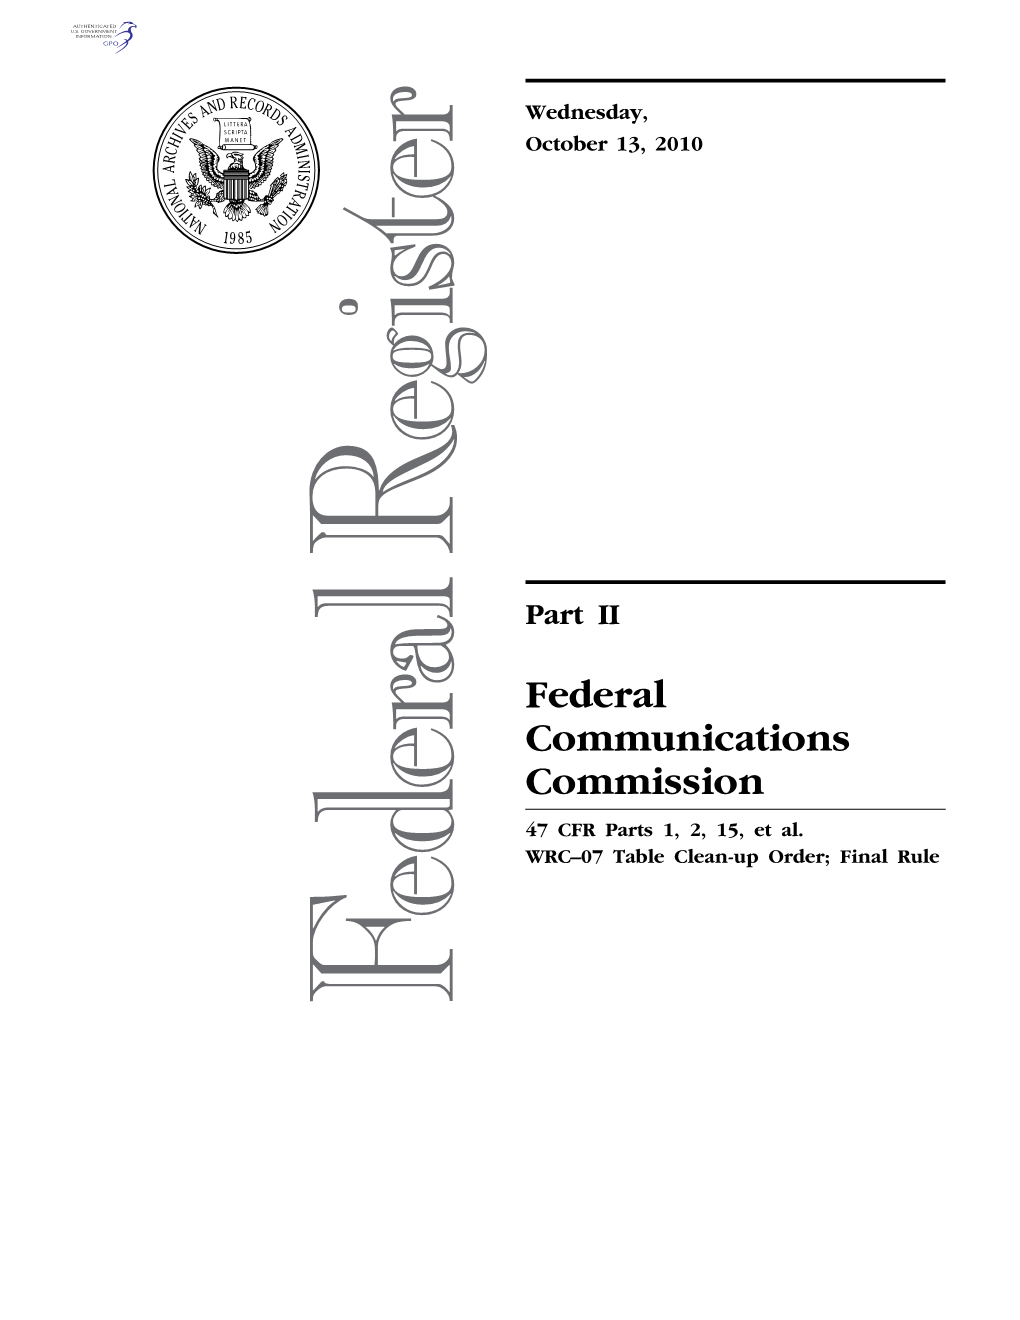 Federal Communications Commission 47 CFR Parts 1, 2, 15, Et Al